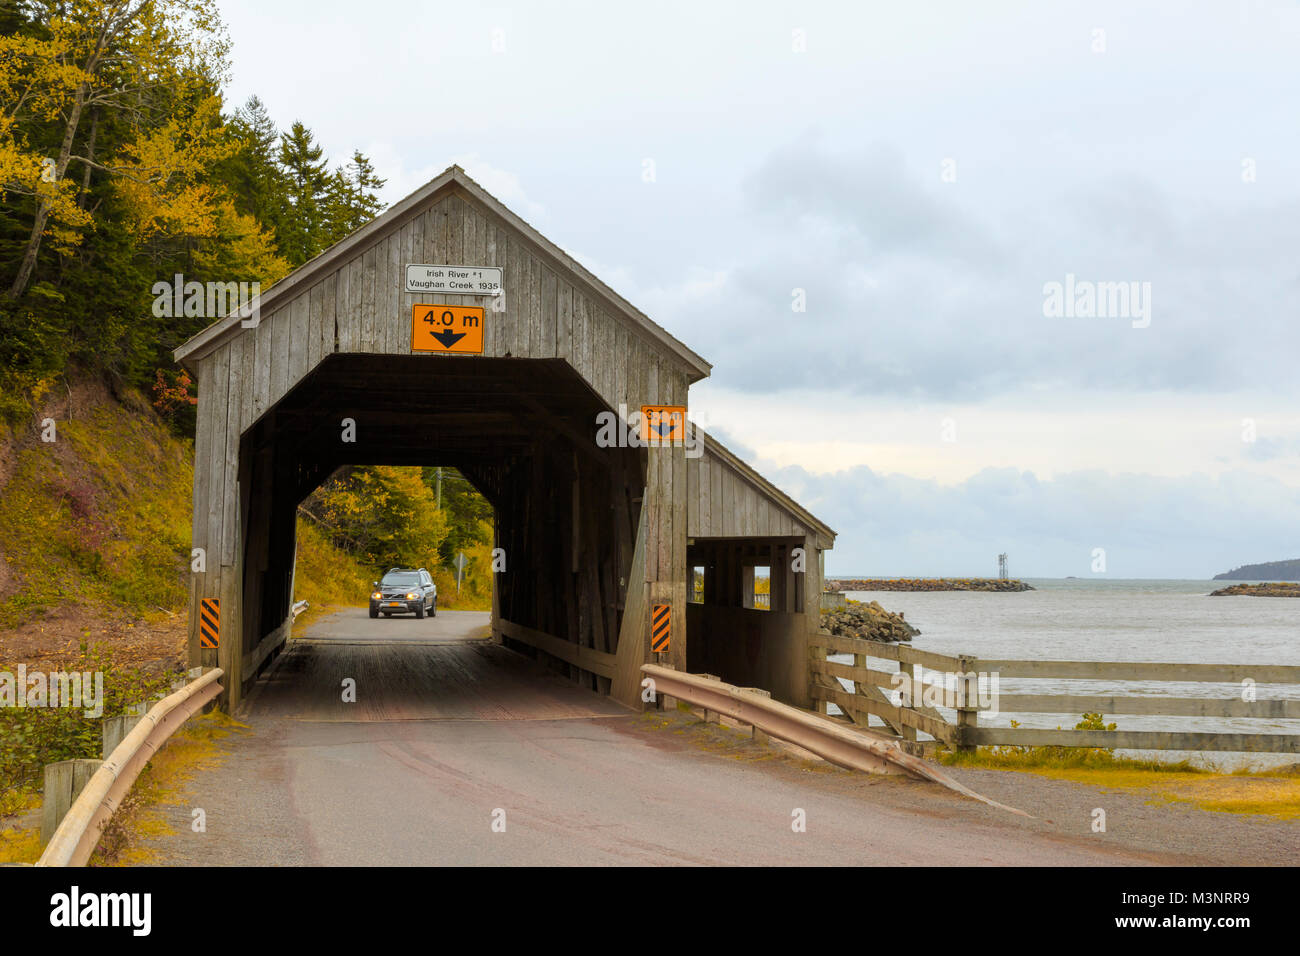 Vieux pont couvert en bois sur la route de l'entrée du port intérieur célèbre baie de Fundy accueil des changements de marée extrême, au Nouveau-Brunswick, Canada, à l'automne Banque D'Images